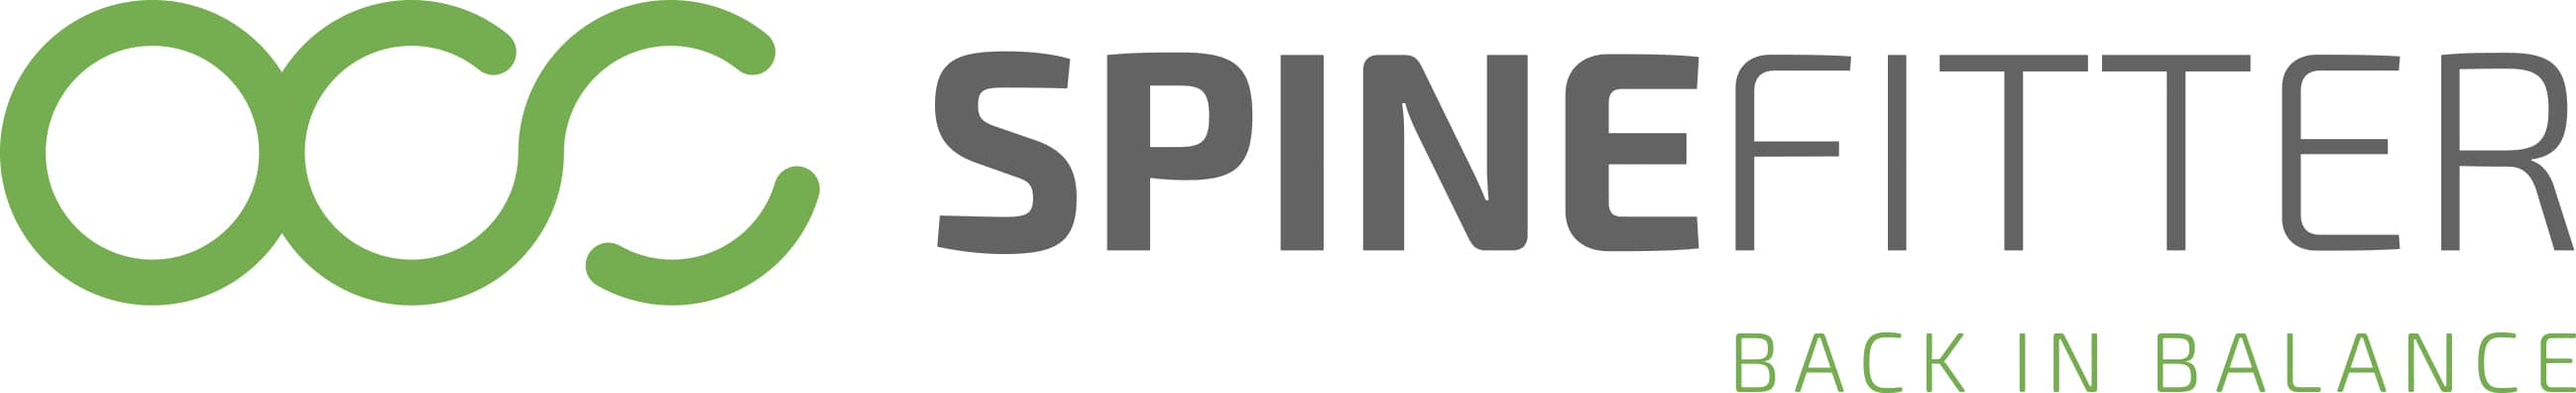 Logo Spinefitter horizontal